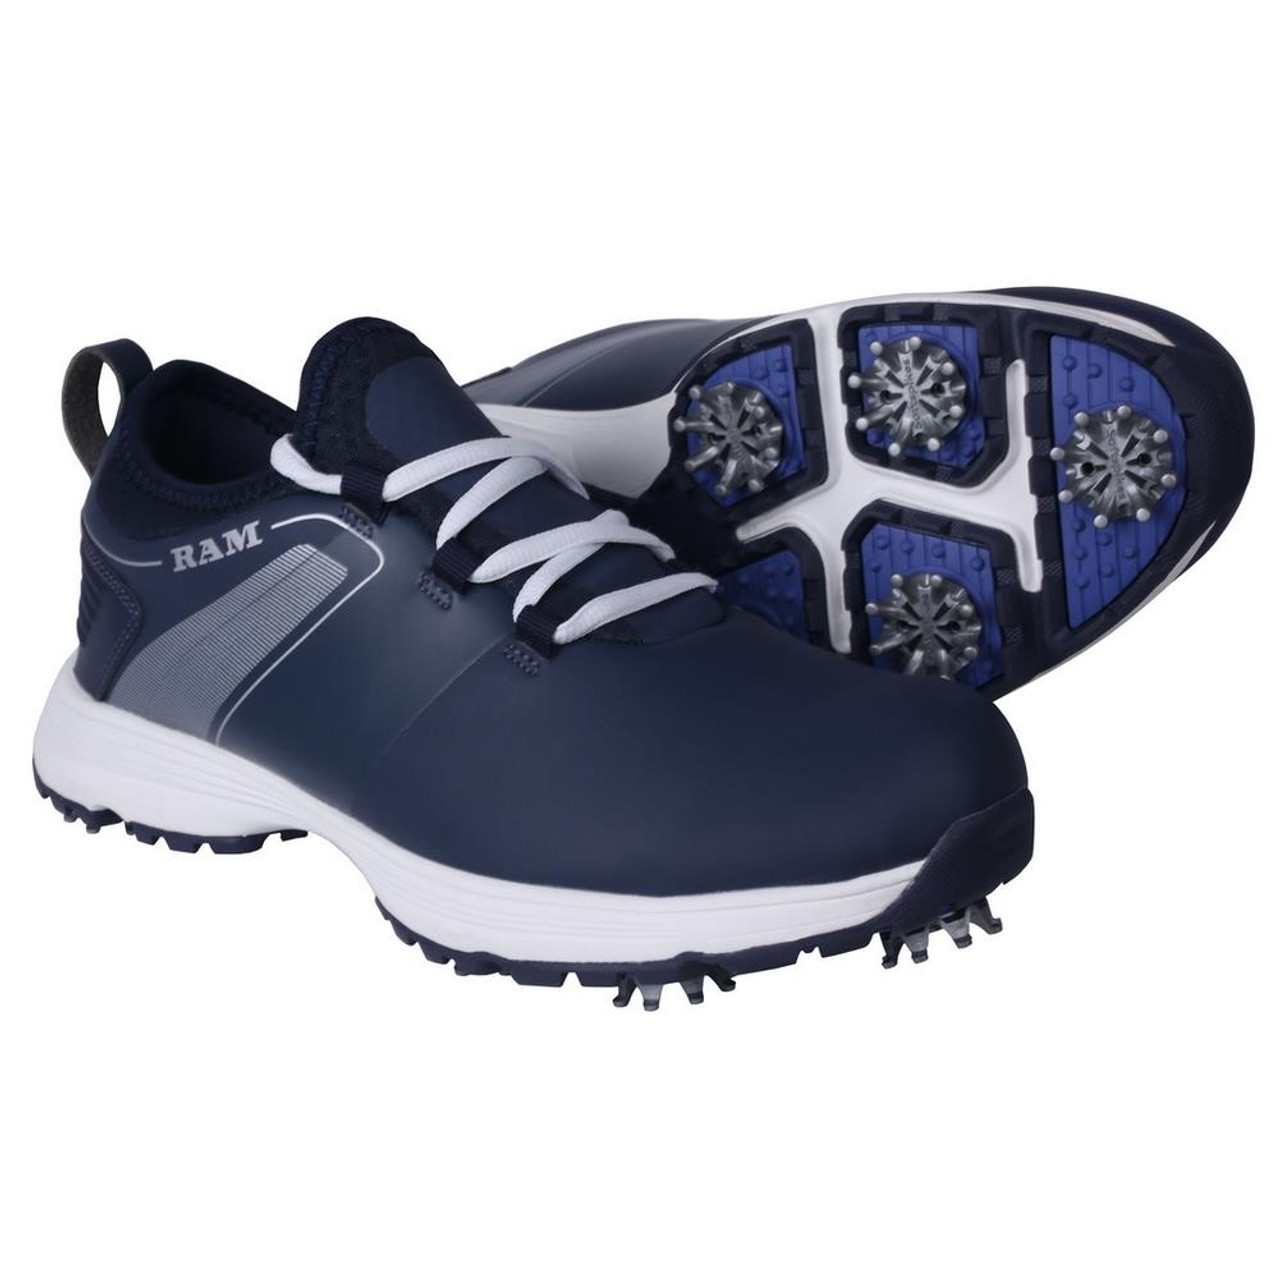 Ram Golf XT1 Mens Waterproof Golf Shoes, Spiked, Blue - RamGolf.co.uk